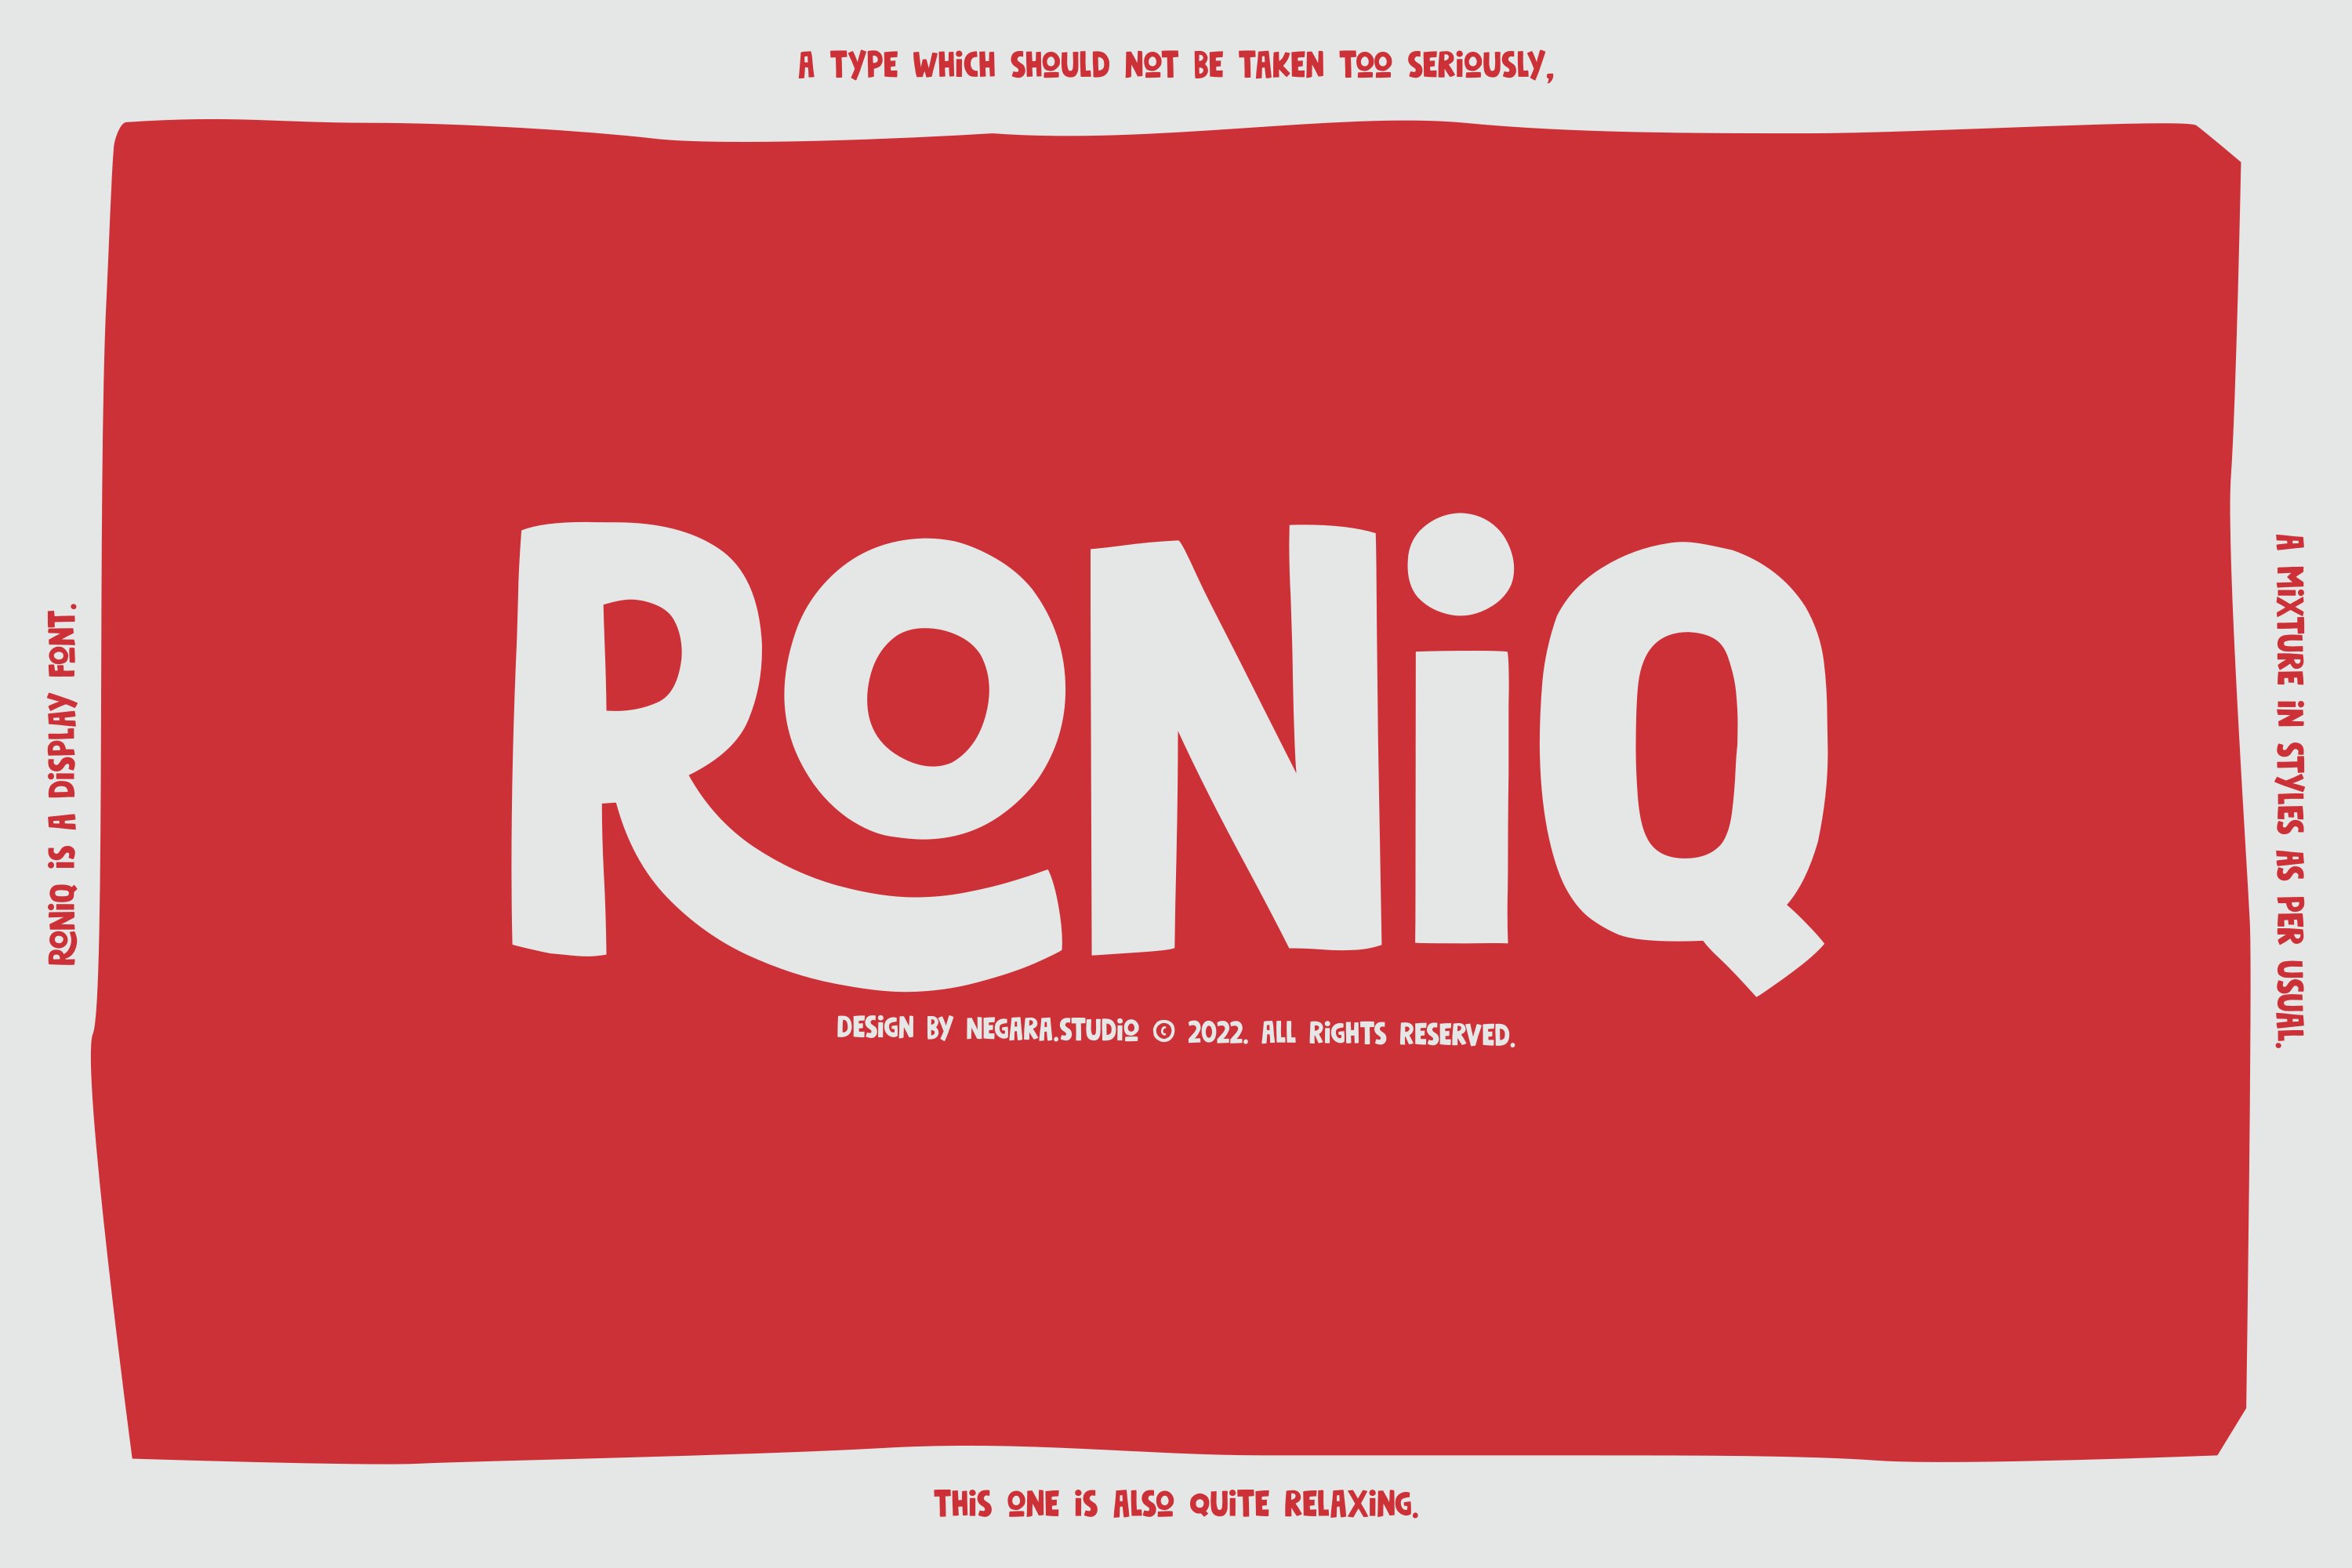 Roniq cover image.